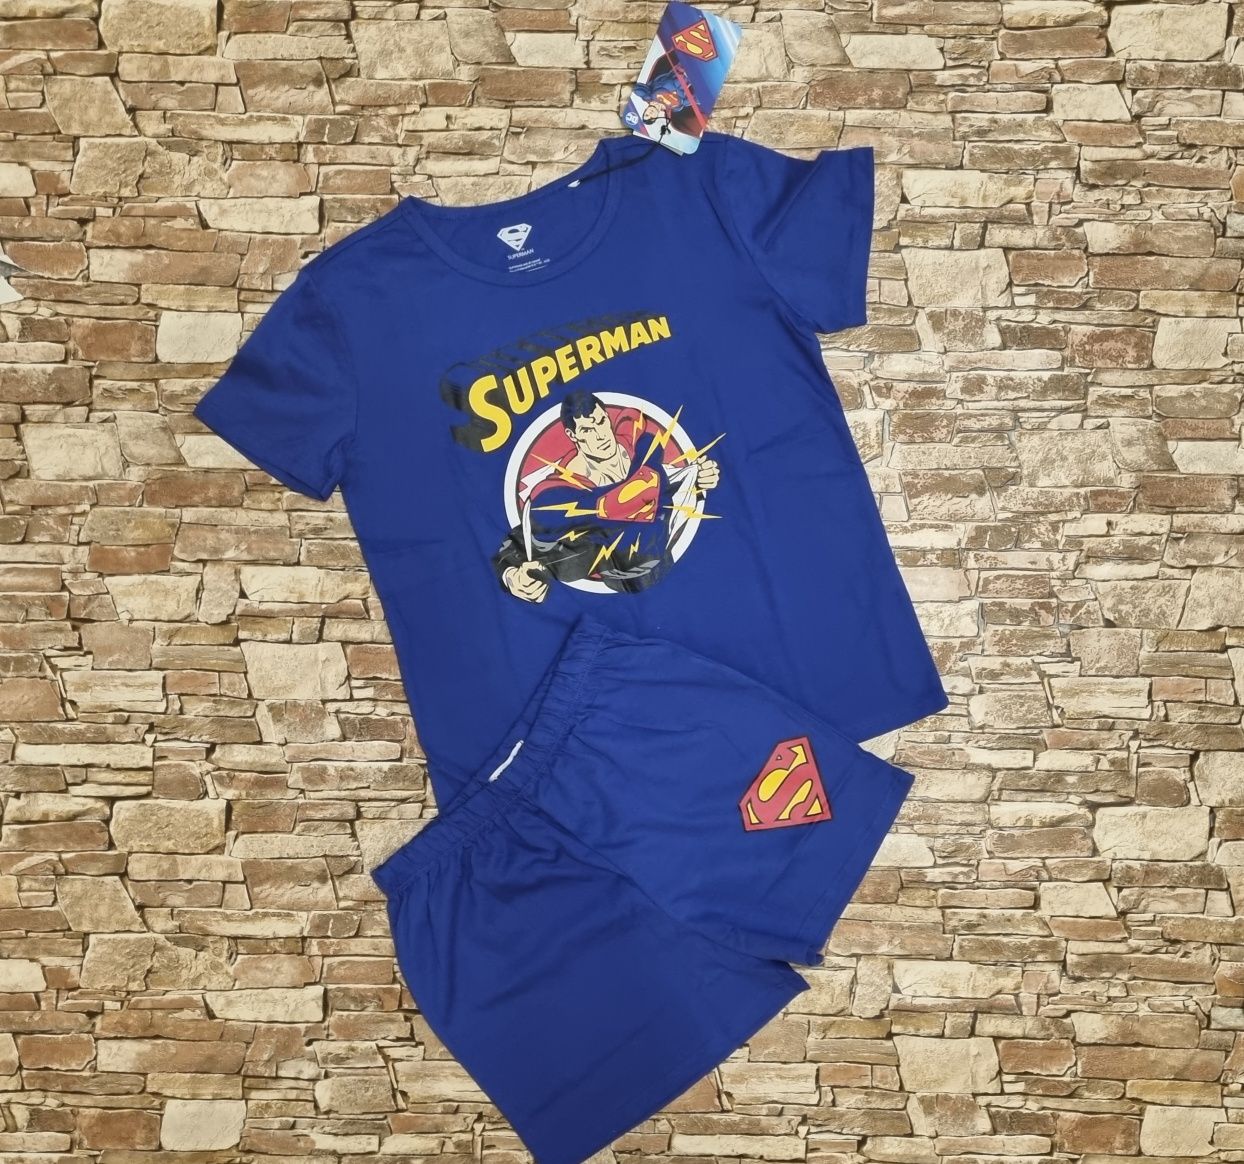 Піжама з Суперменом для хлопчика. Шорти та футболка.
- футболка з коро